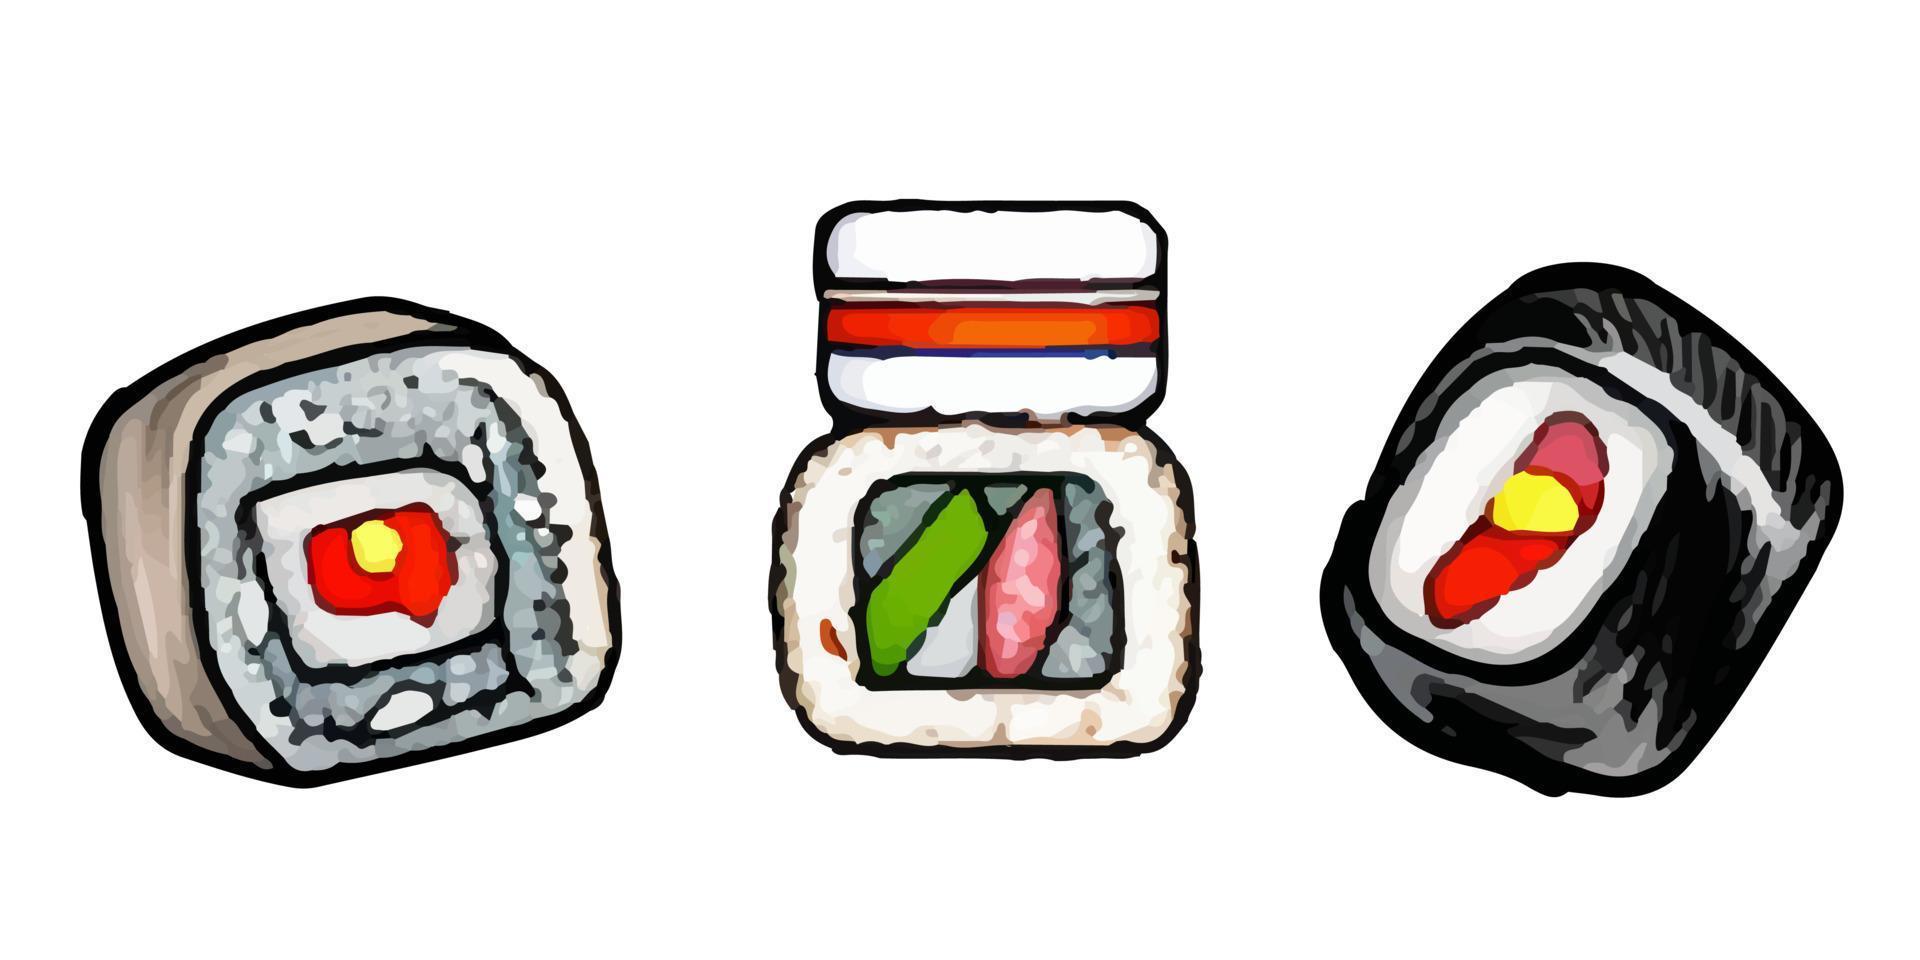 rullar, gunkan, temaki och inari. bra uppsättning av olika annorlunda typer av sushi isolerat på vit bakgrund. vektor